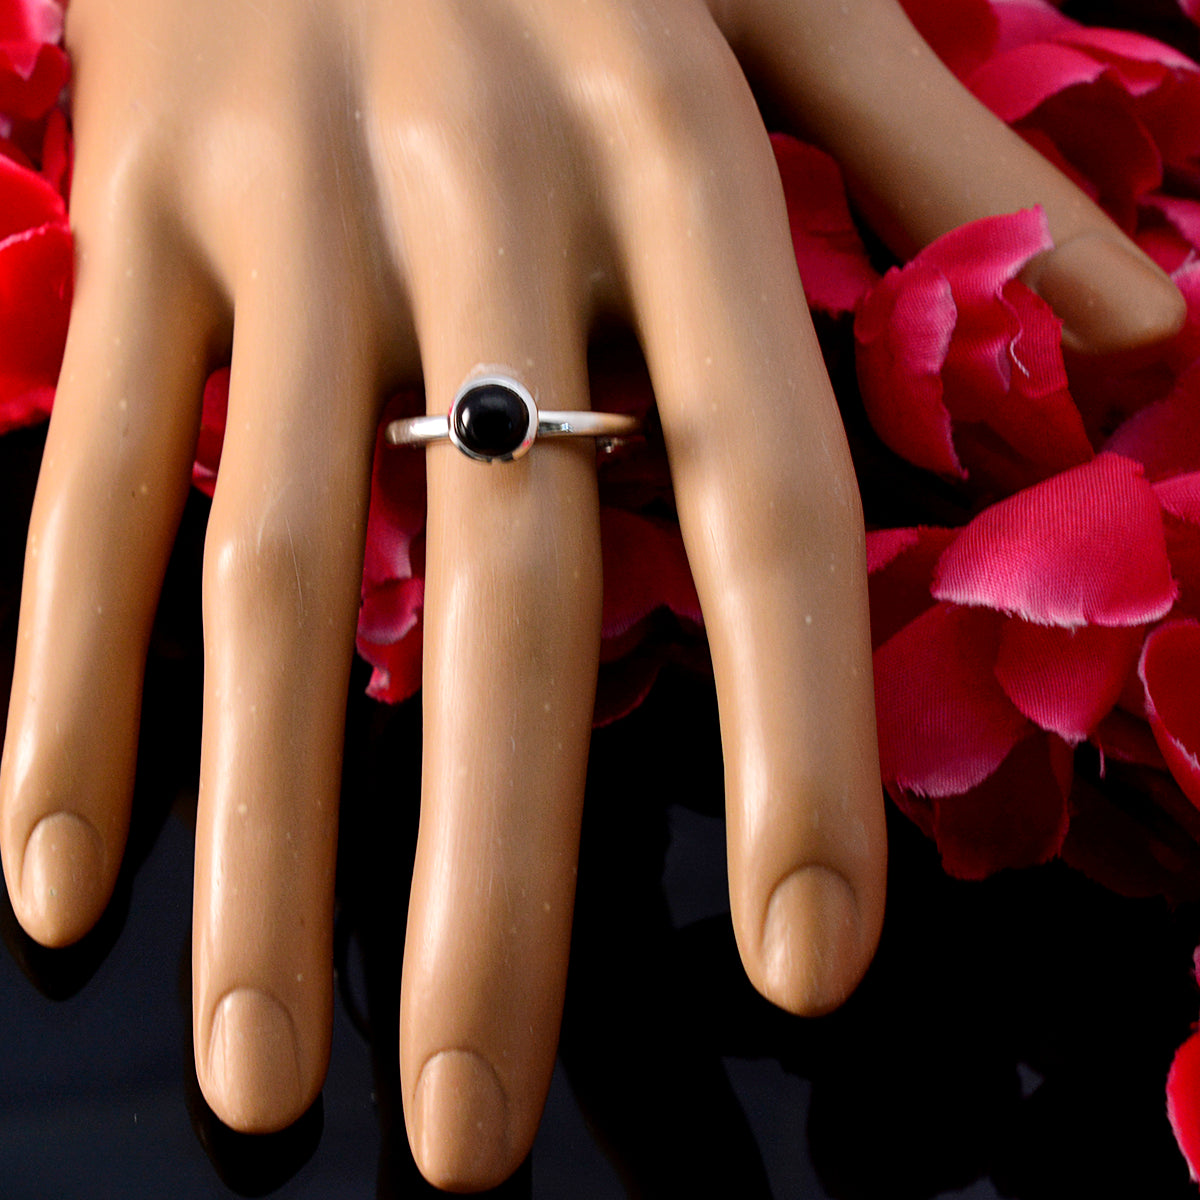 Riyo Fascinating Gemstones Black Onyx Solid Silver Rings Initial